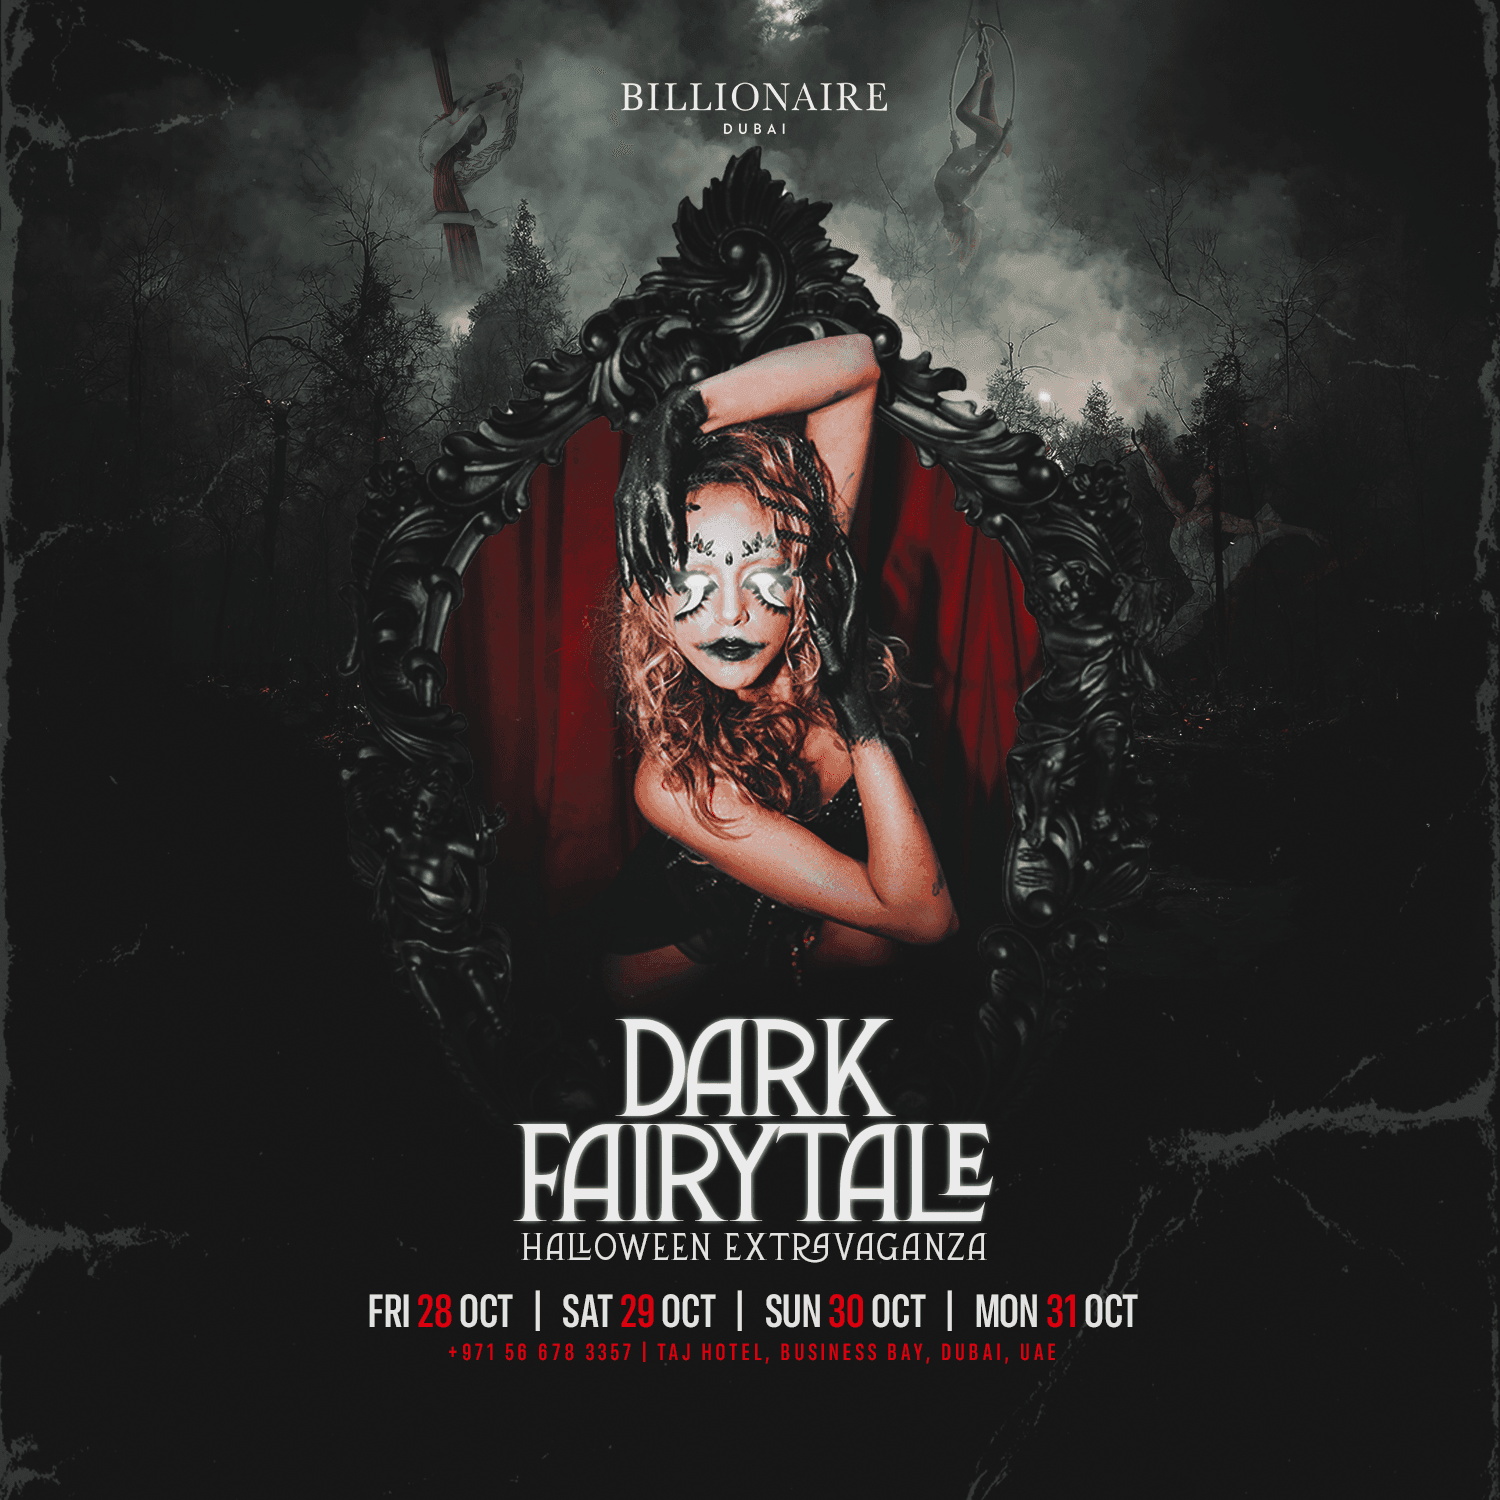 Dark Fairytale at Billionaire